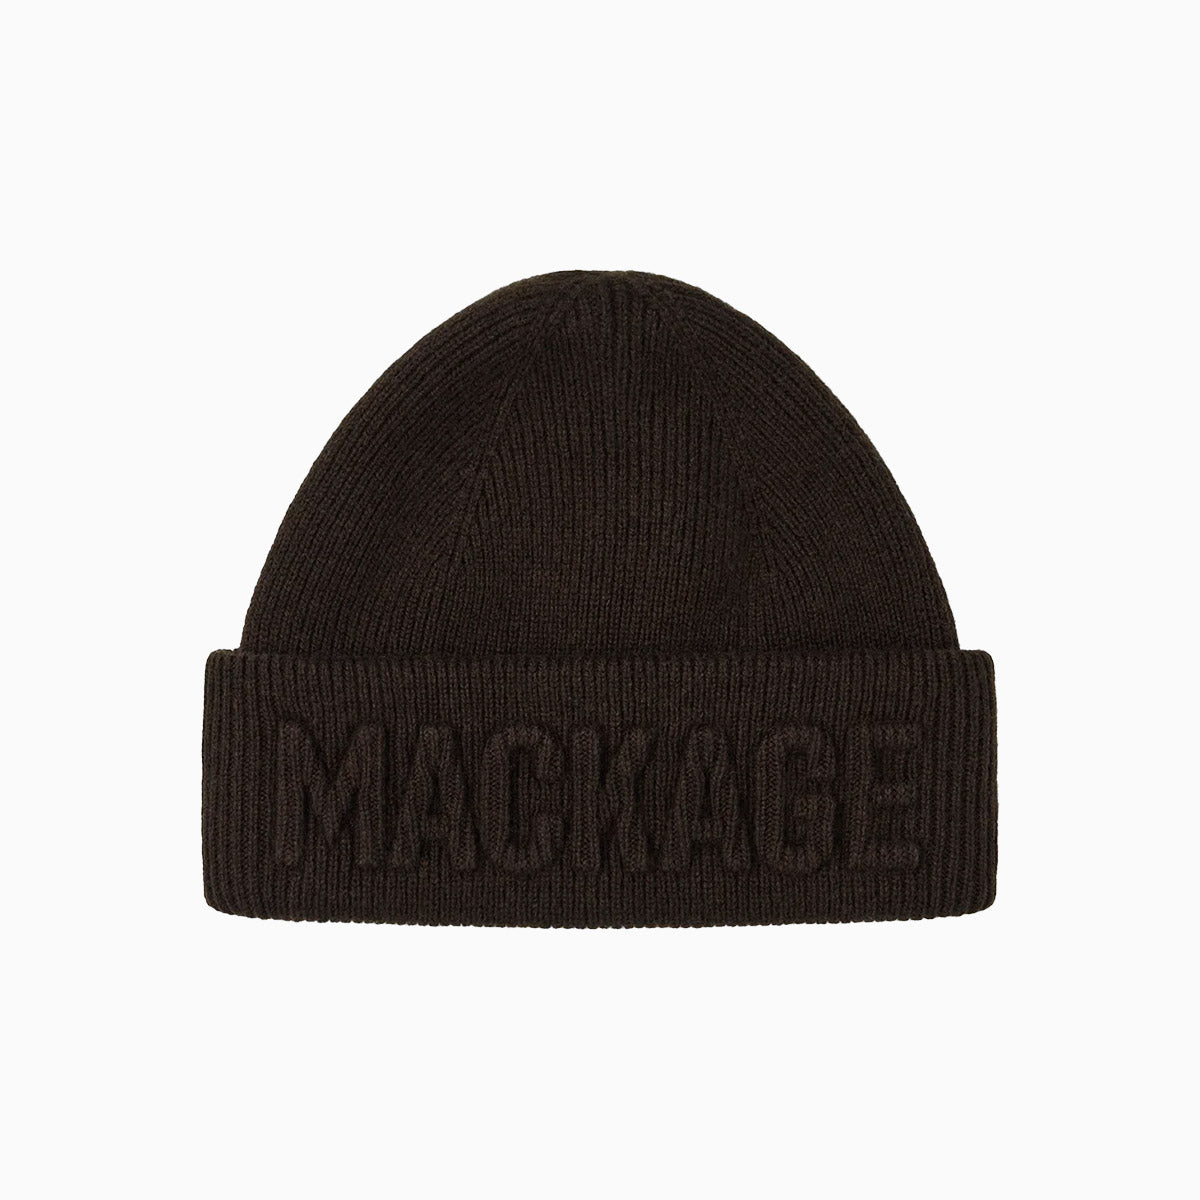 mackage-jett-knit-merino-and-cashmere-beanie-hat-jett-army_